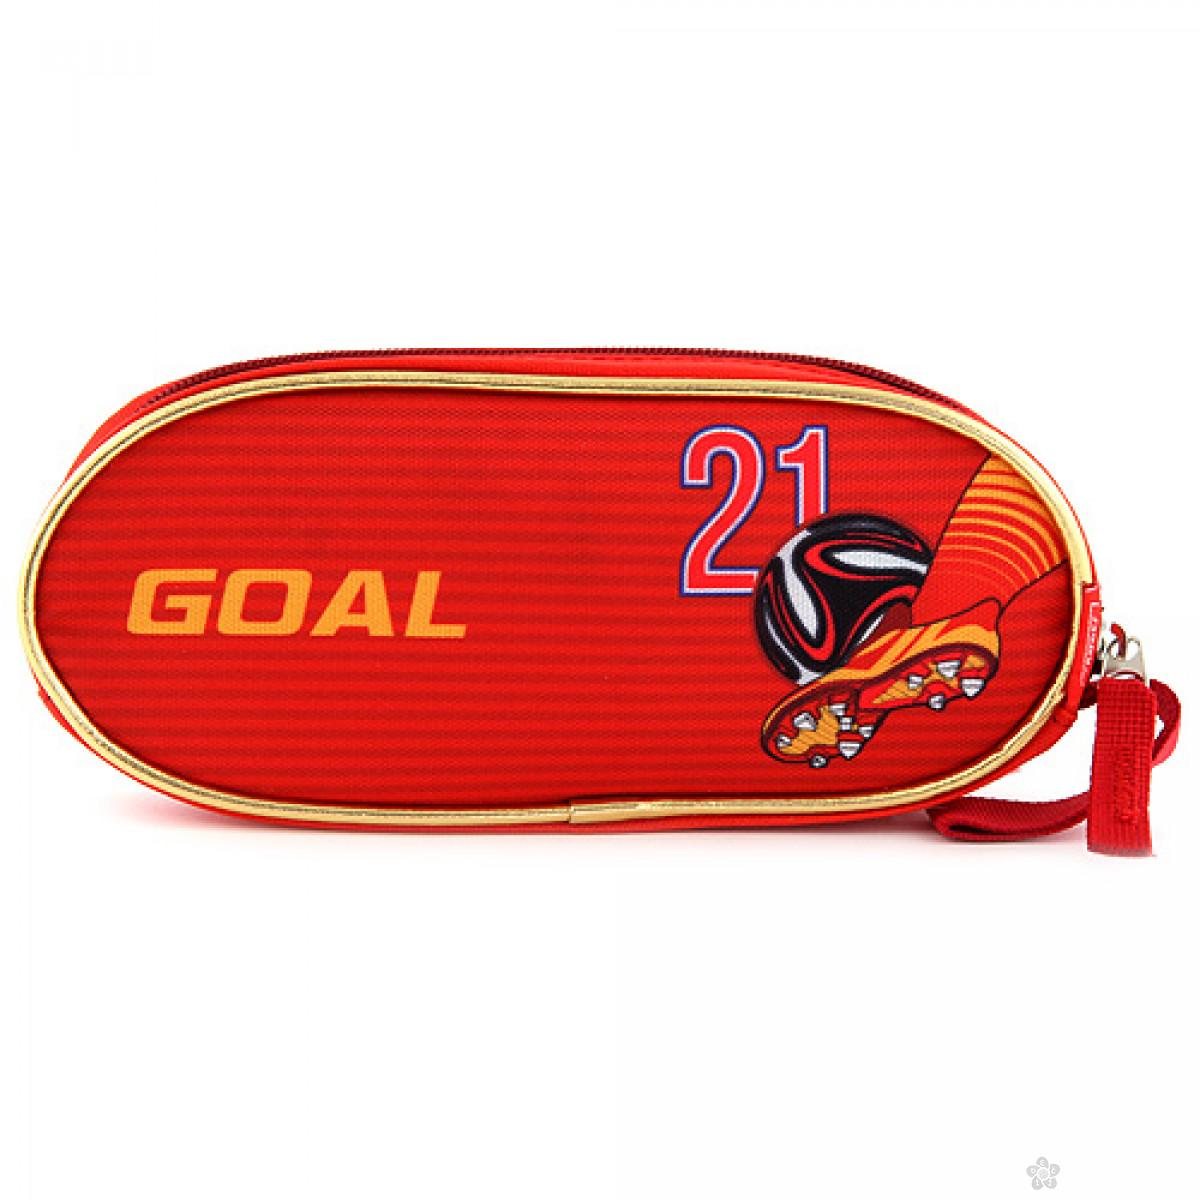 Ovalna pernica Goal 17239 